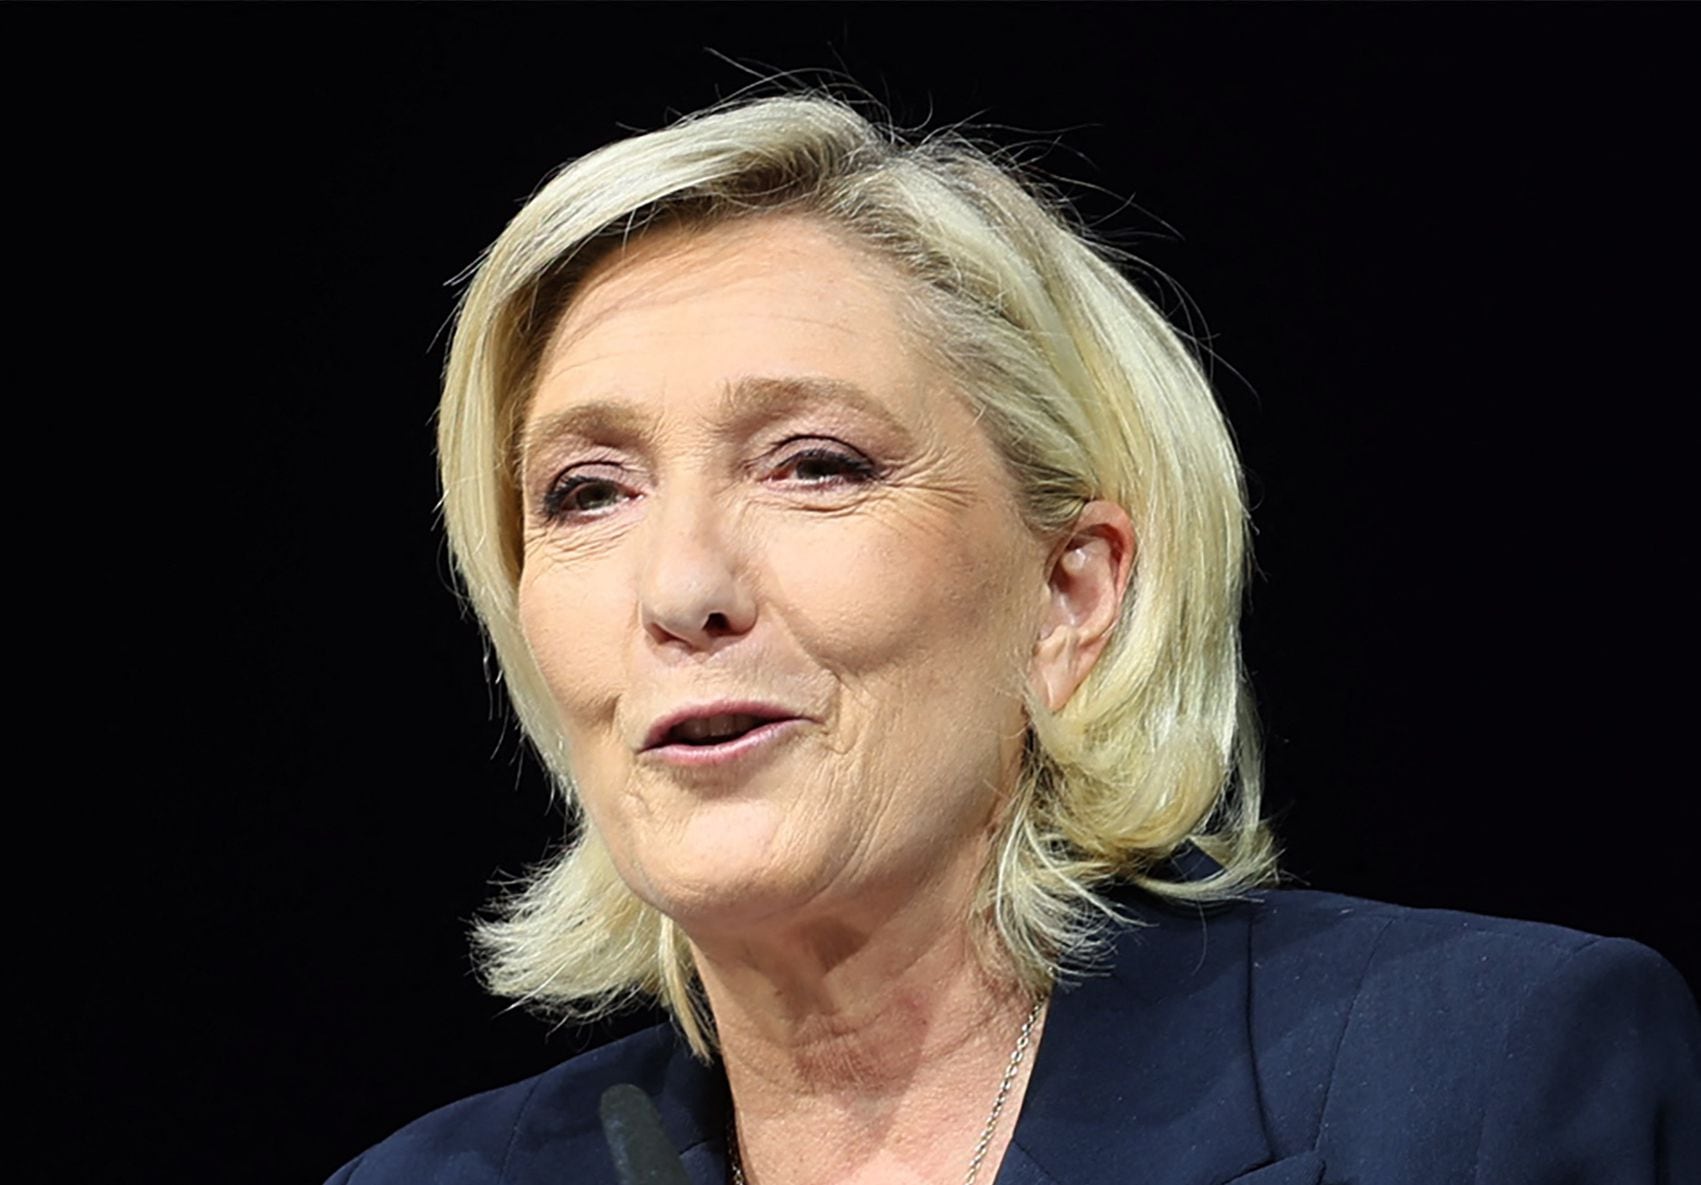 El partido de ultraderecha Agrupación Nacional (RN) y su líder Marine Le Pen podrían obtener una mayoría absoluta en la segunda vuelta de las elecciones legislativas. Foto: Francois Lo RANCOIS LO Presti/AFP